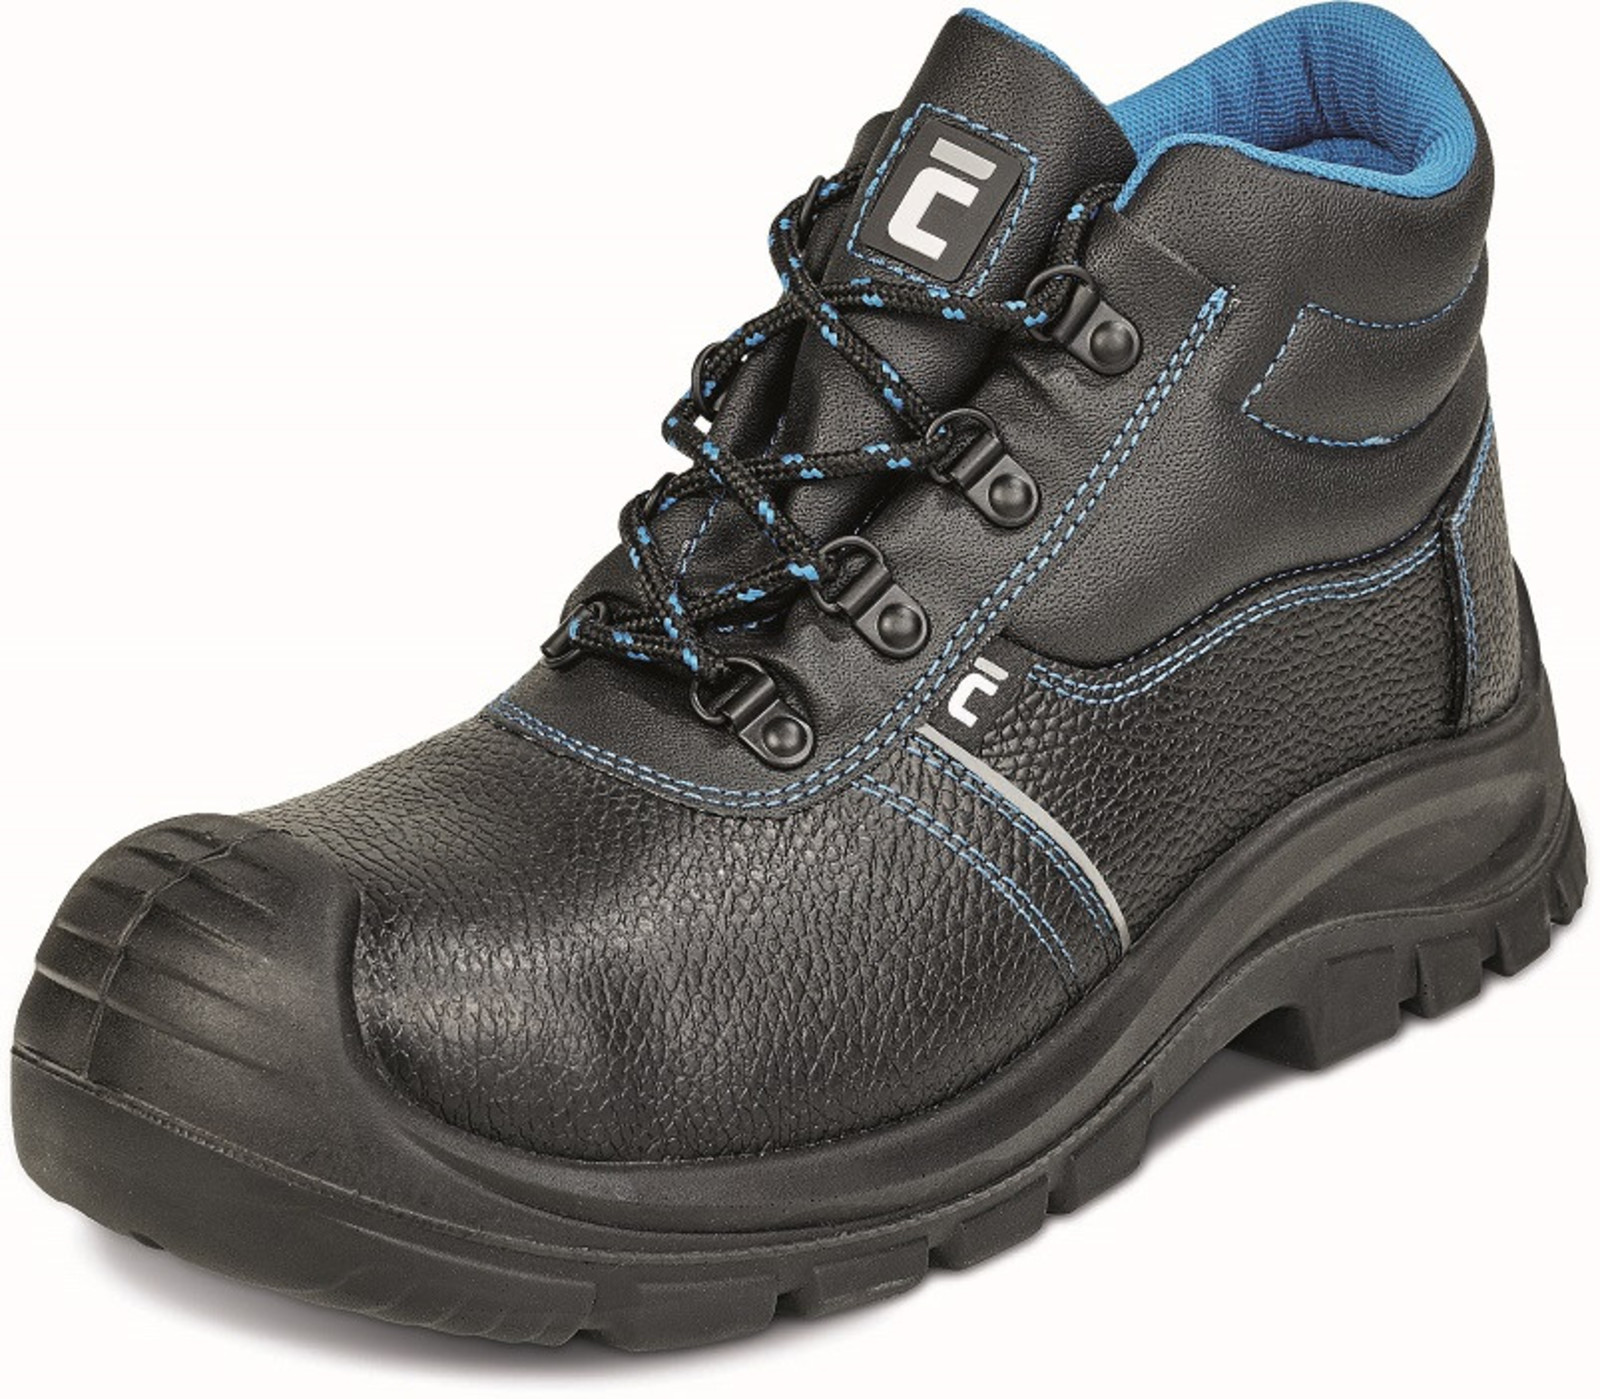 Bezpečnostná obuv Raven XT S1 - veľkosť: 36, farba: čierna